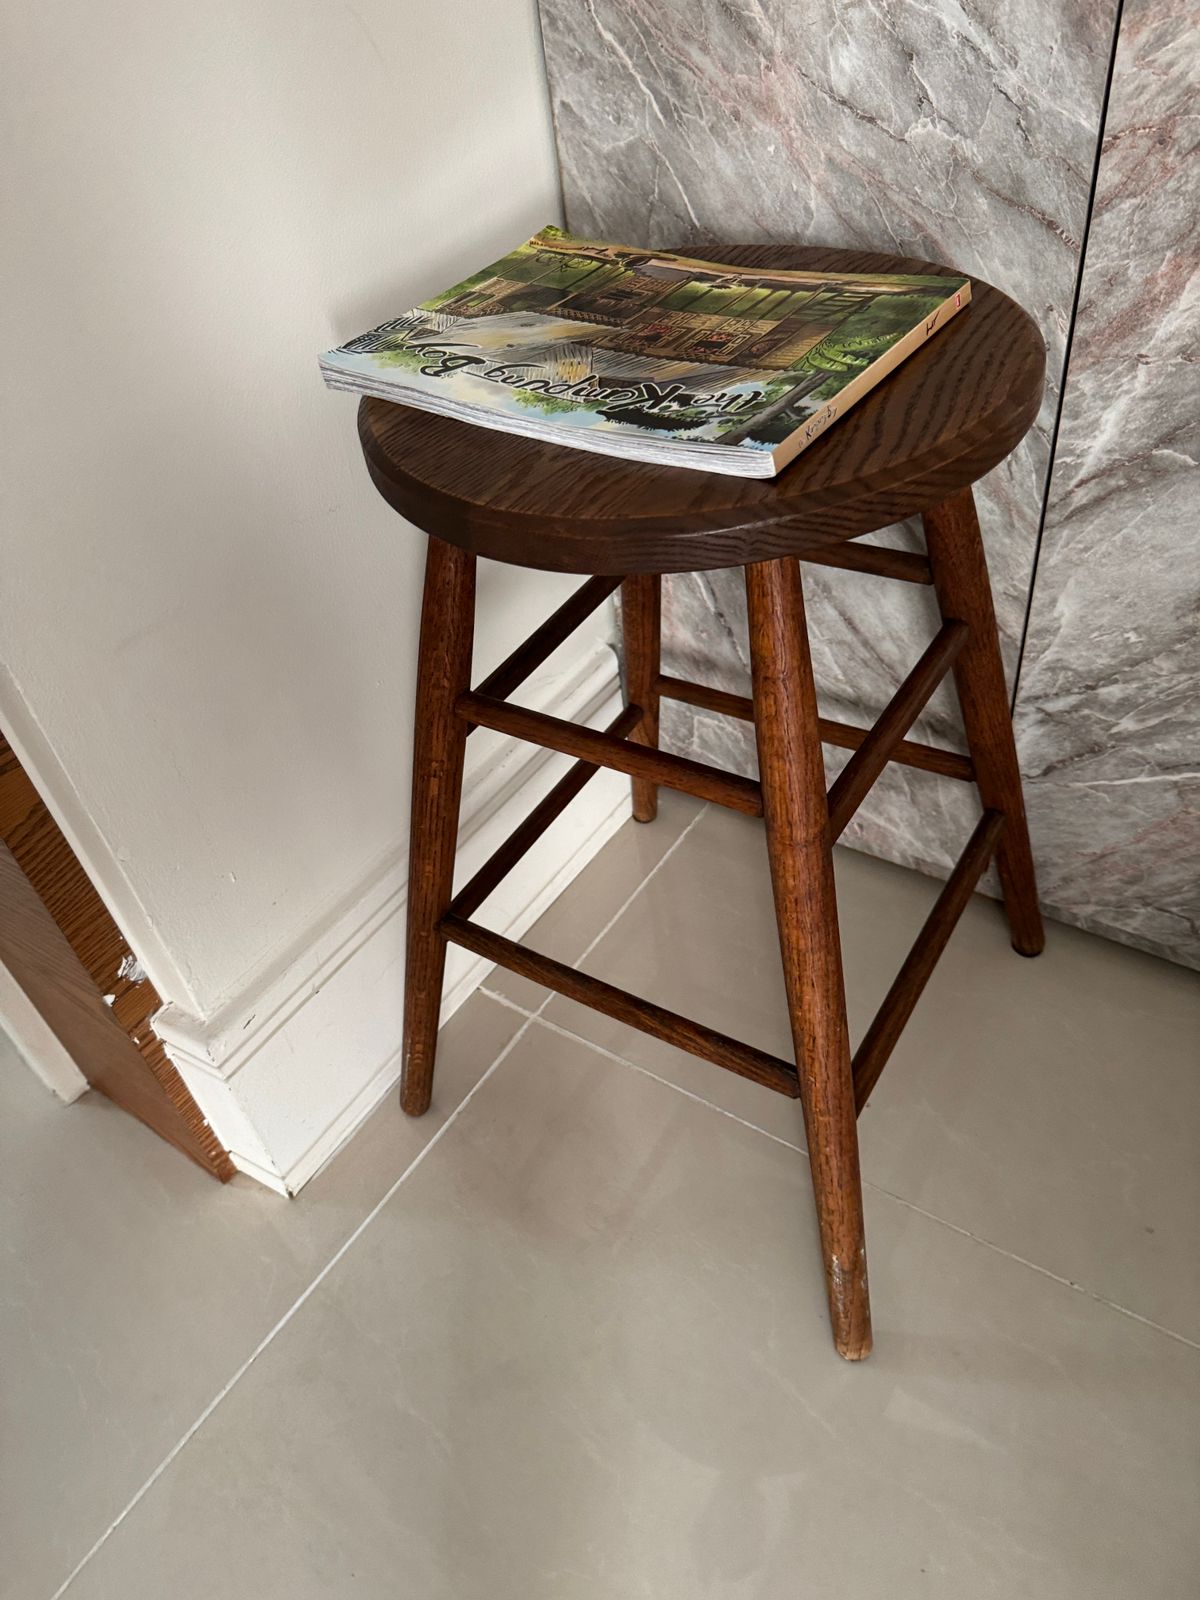 Wooden stool repair 